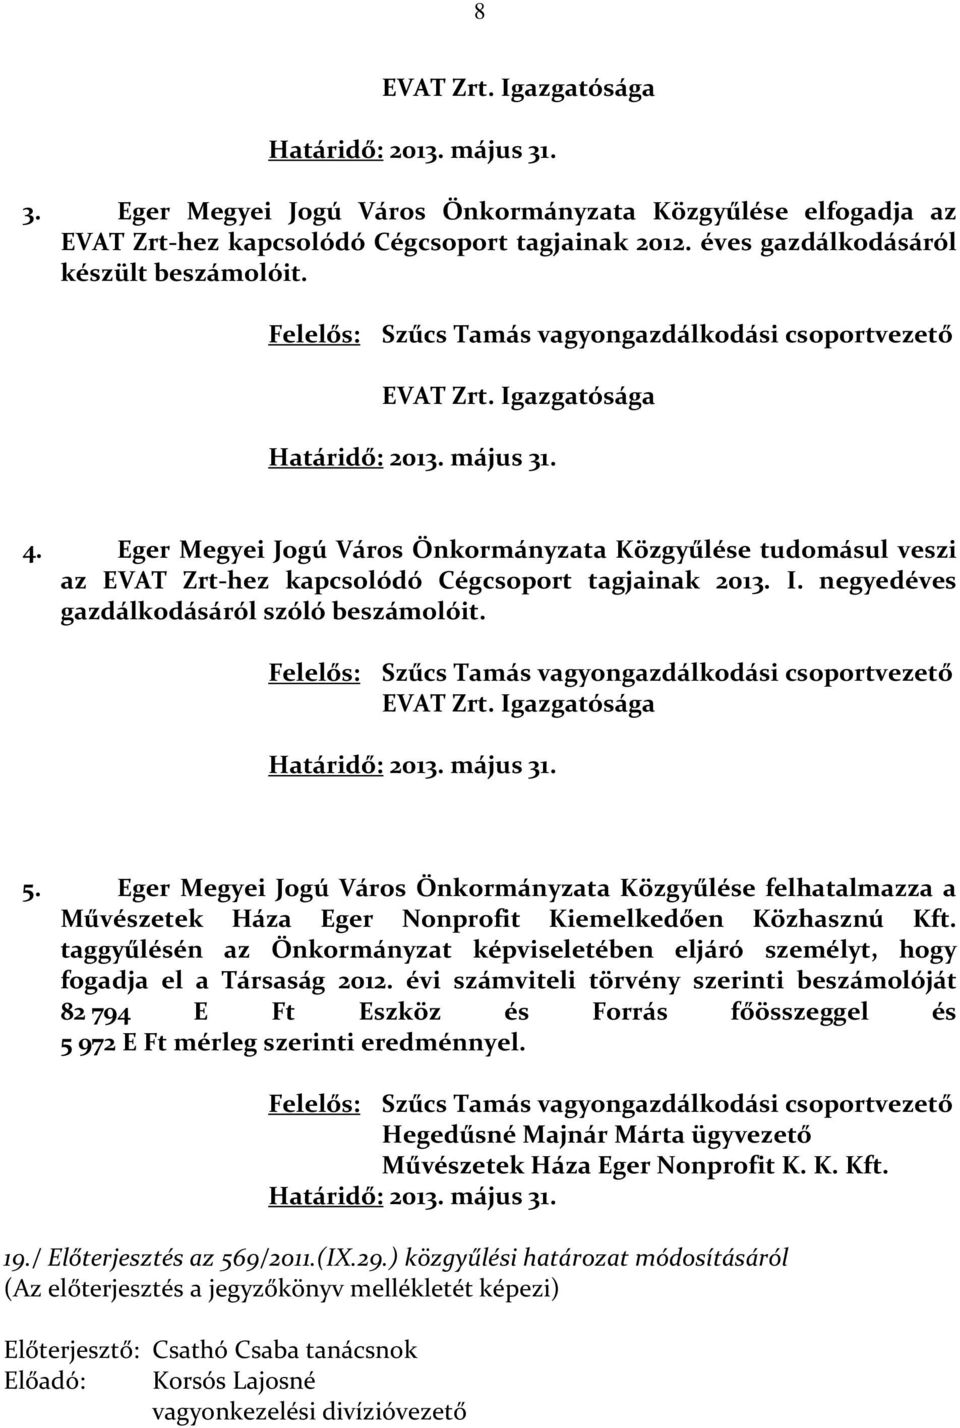 Eger Megyei Jogú Város Önkormányzata Közgyűlése tudomásul veszi az EVAT Zrt-hez kapcsolódó Cégcsoport tagjainak 2013. I. negyedéves gazdálkodásáról szóló beszámolóit.